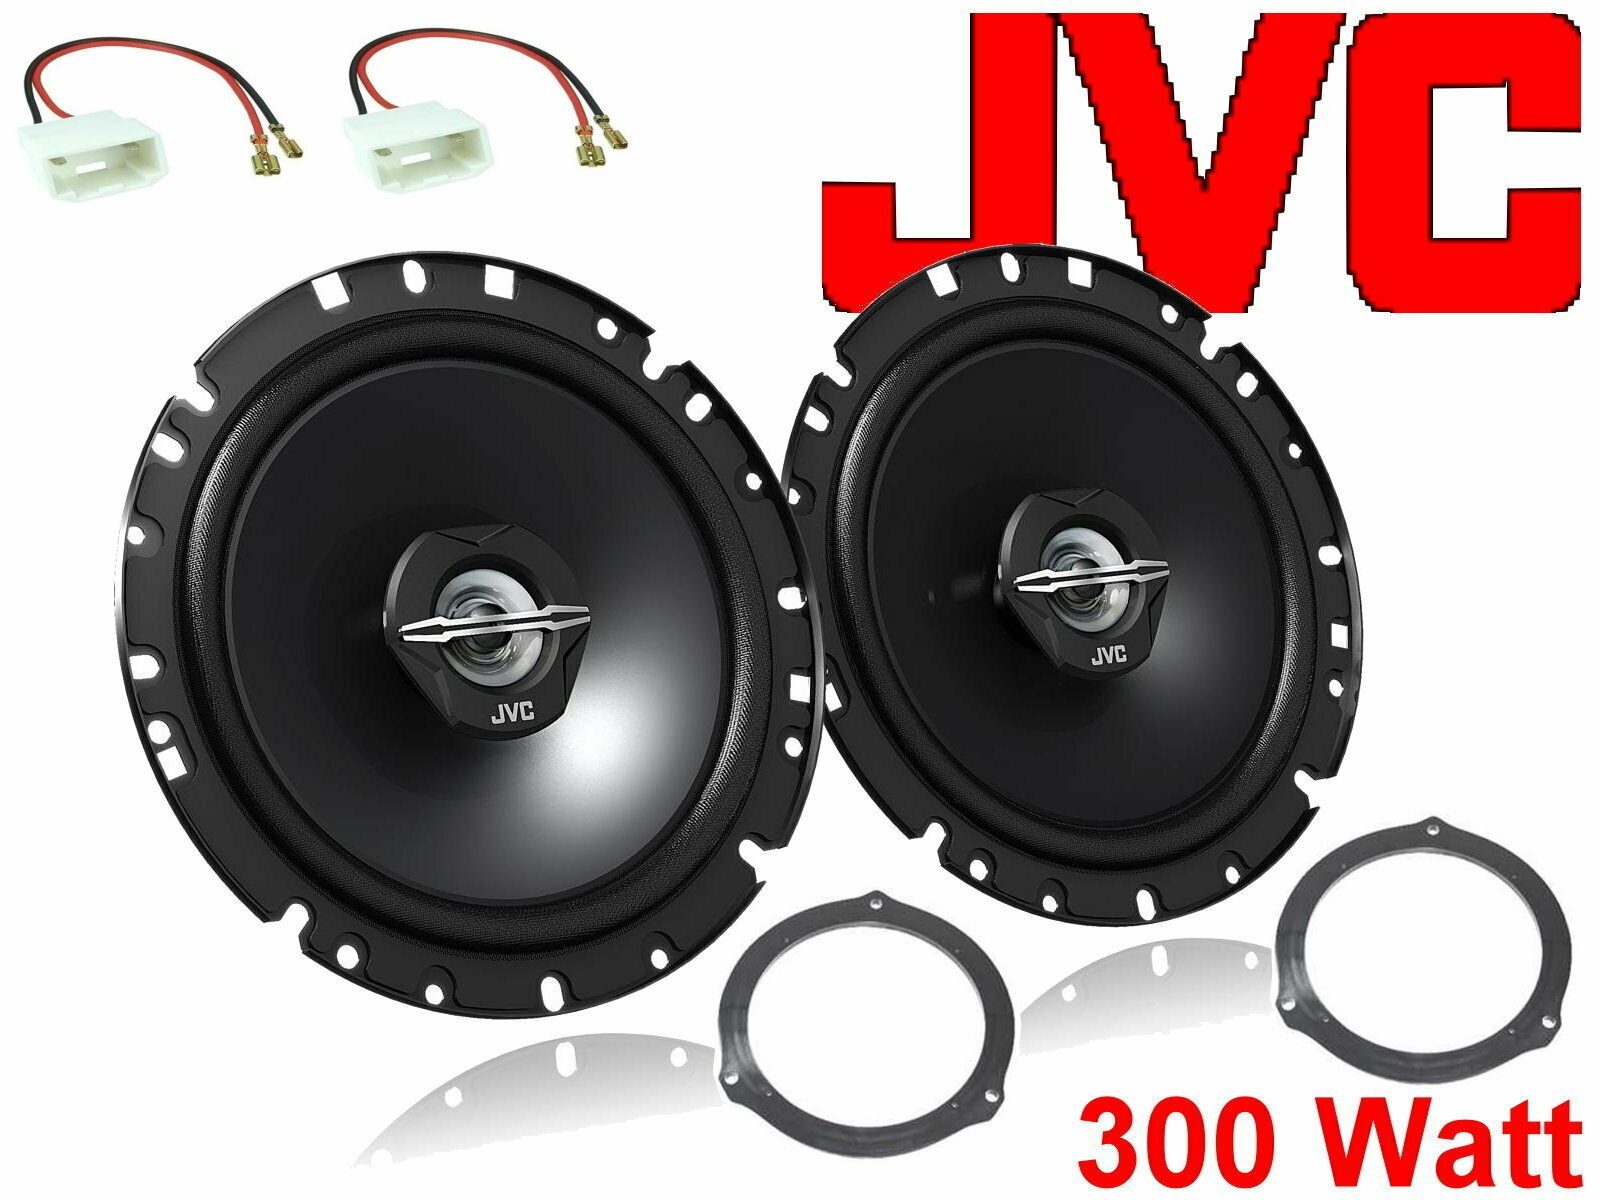 DSX JVC passend Auto-Lautsprecher Bj 11/04-11/10 für W) (30 Focus Lautspr Ford